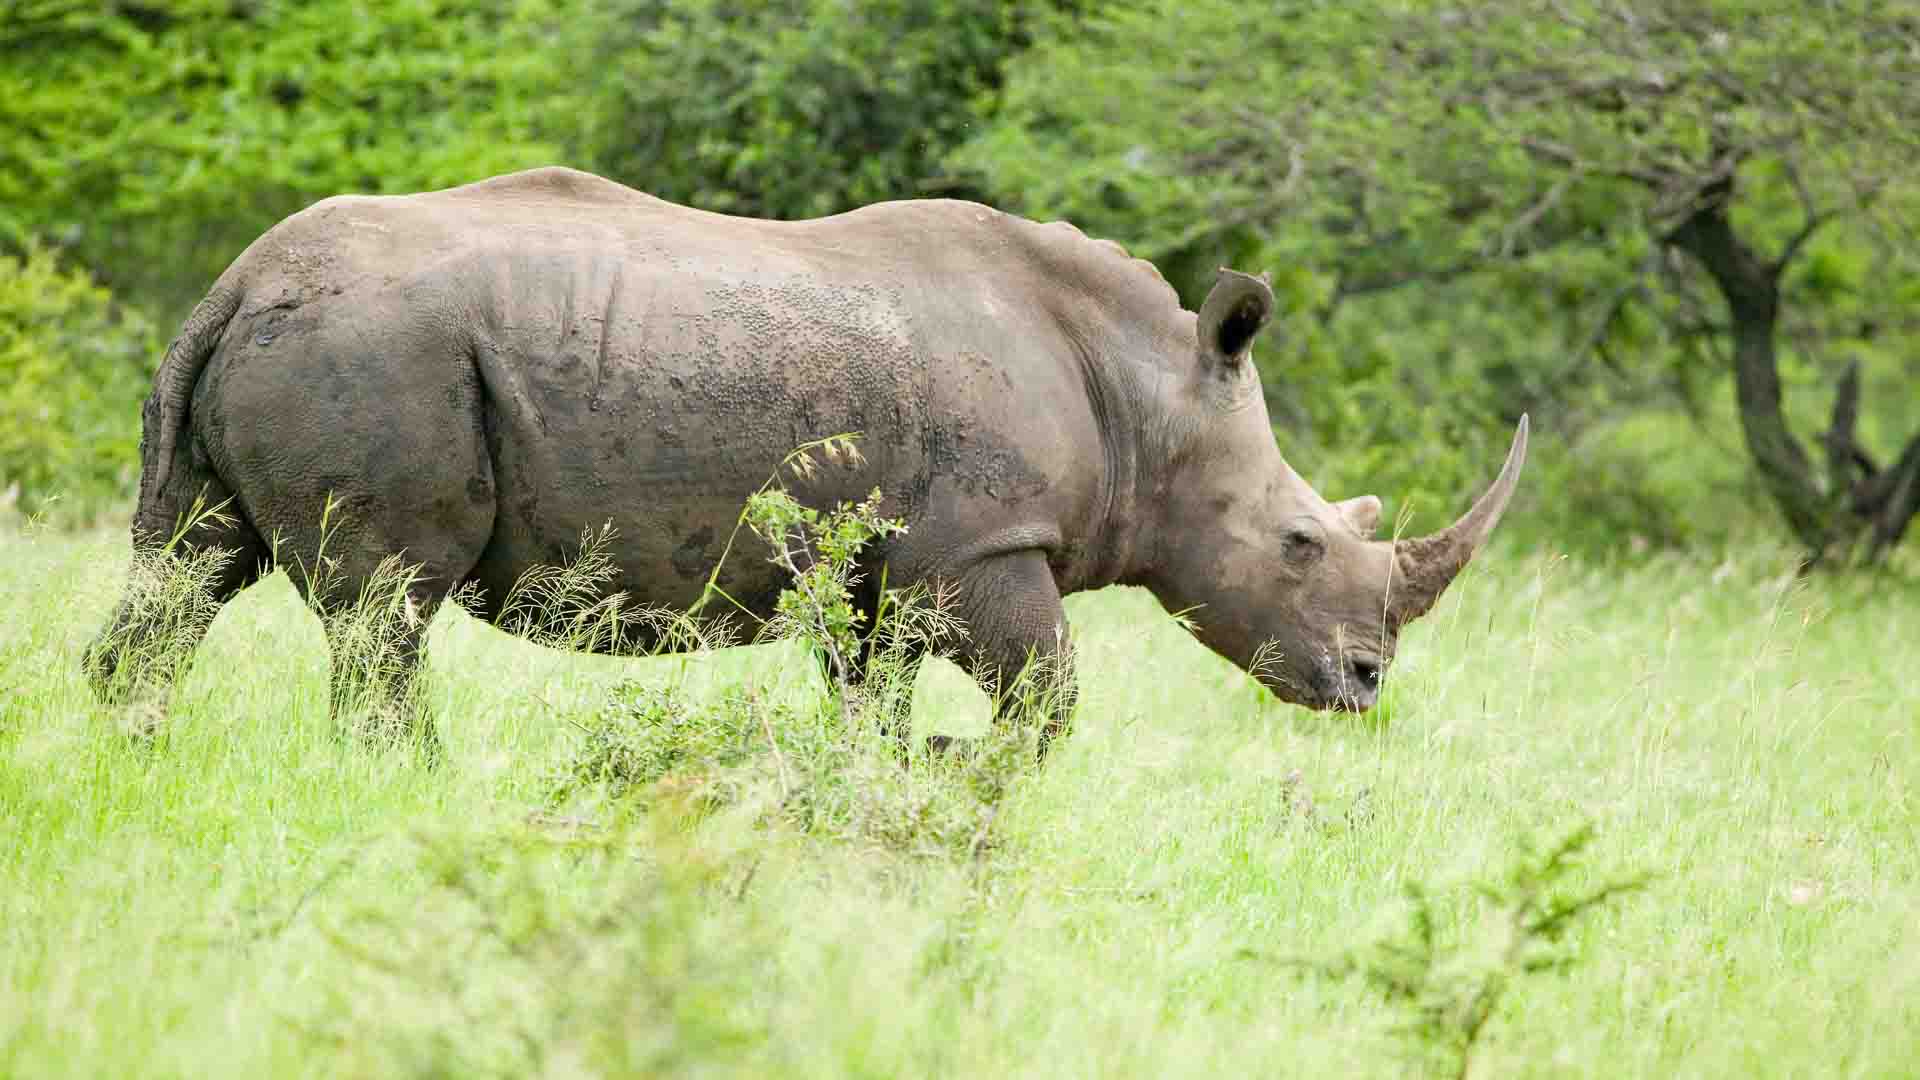 A rhino walking in Hluhluwe-iMfolozi Park.